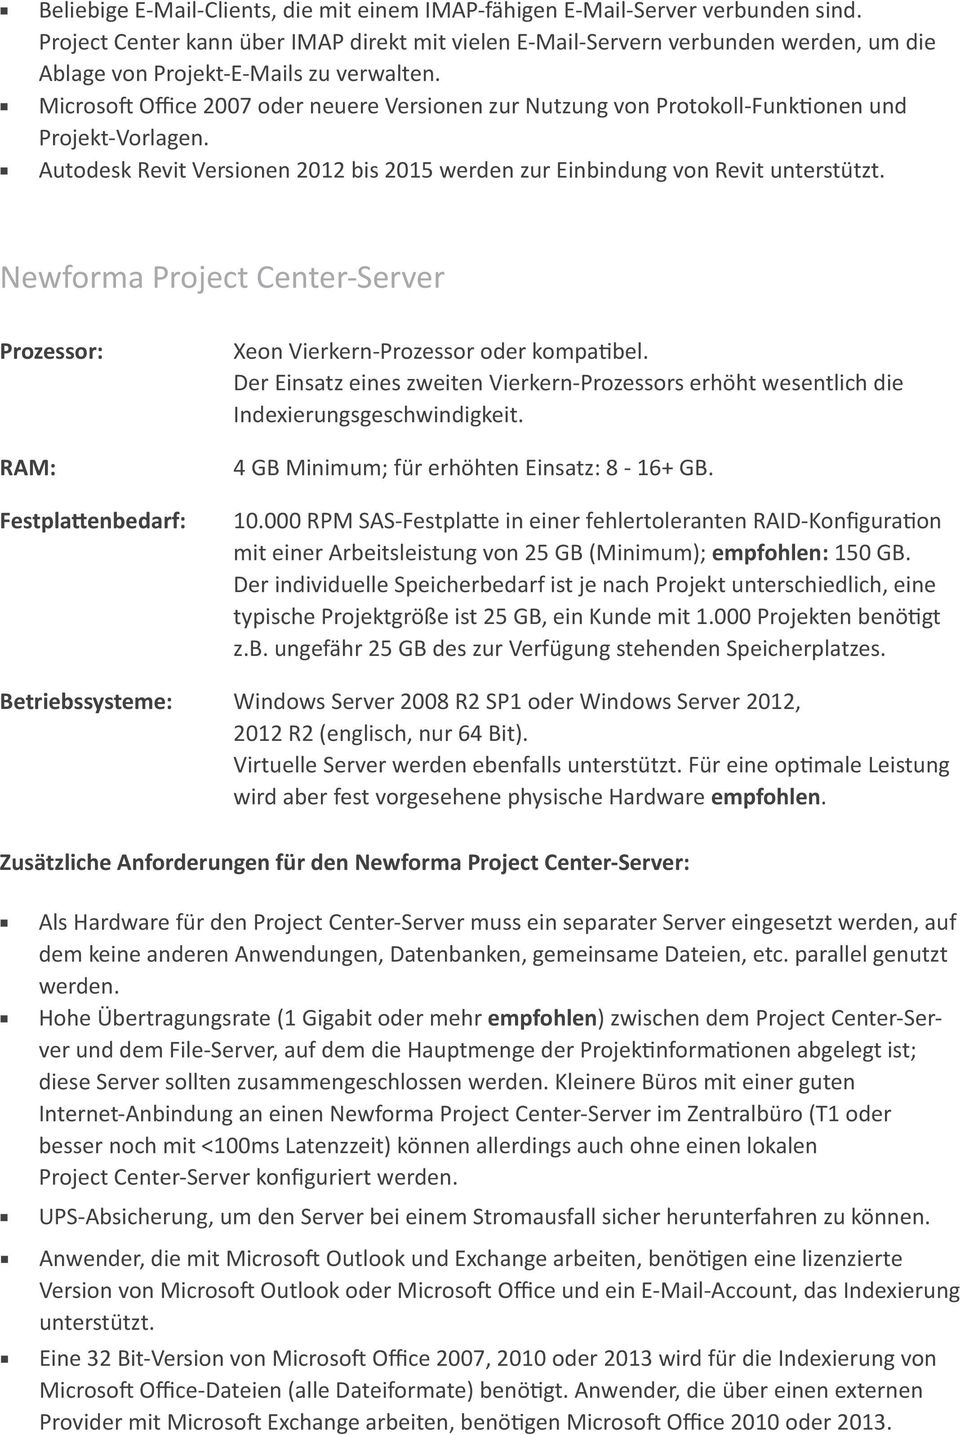 Microsoft Office 2007 oder neuere Versionen zur Nutzung von Protokoll-Funktionen und Projekt-Vorlagen.